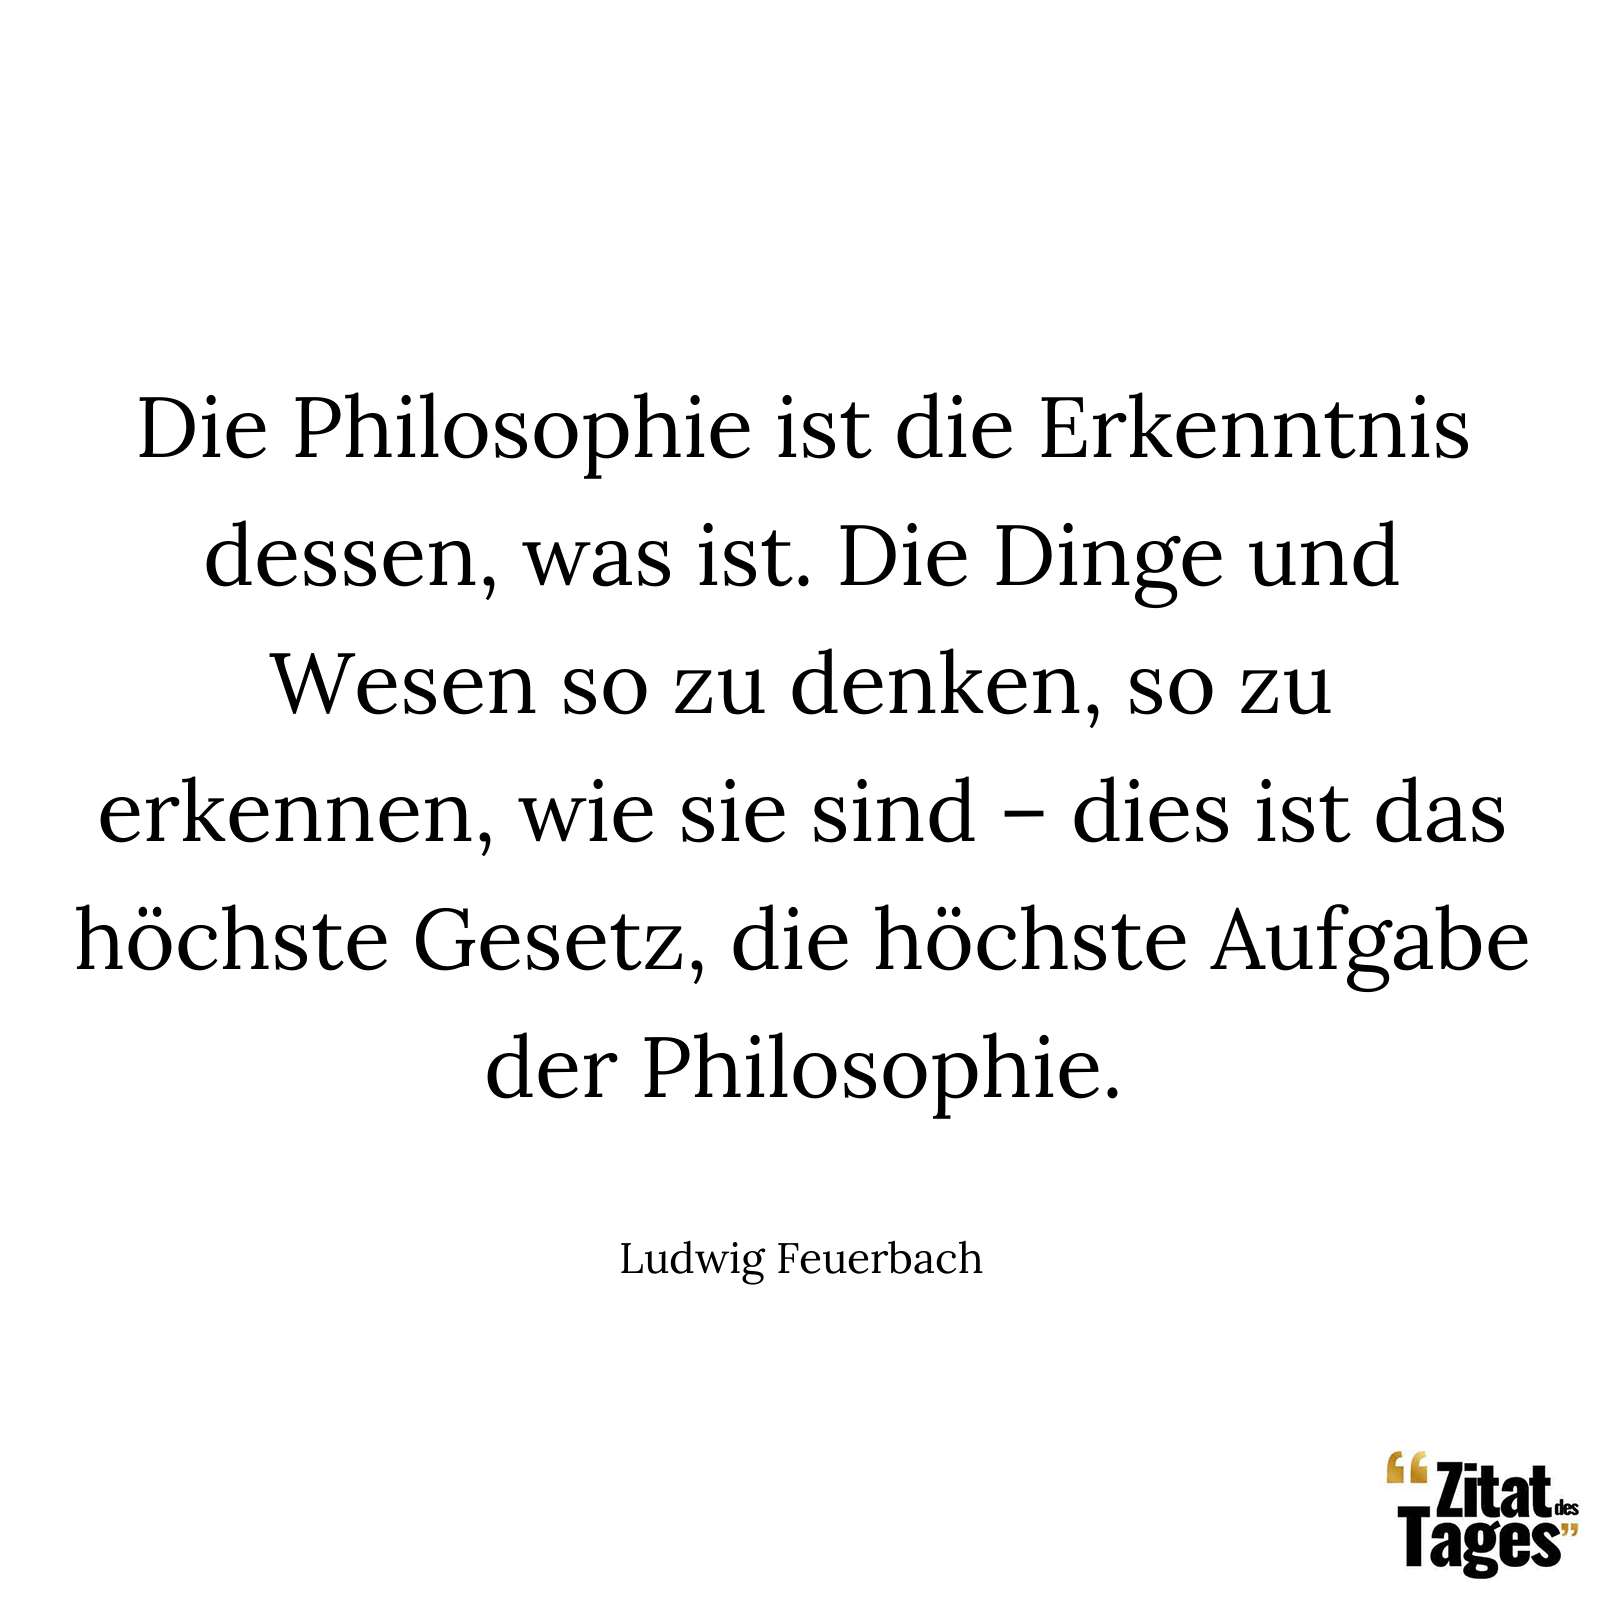 Die Philosophie ist die Erkenntnis dessen, was ist. Die Dinge und Wesen so zu denken, so zu erkennen, wie sie sind – dies ist das höchste Gesetz, die höchste Aufgabe der Philosophie. - Ludwig Feuerbach